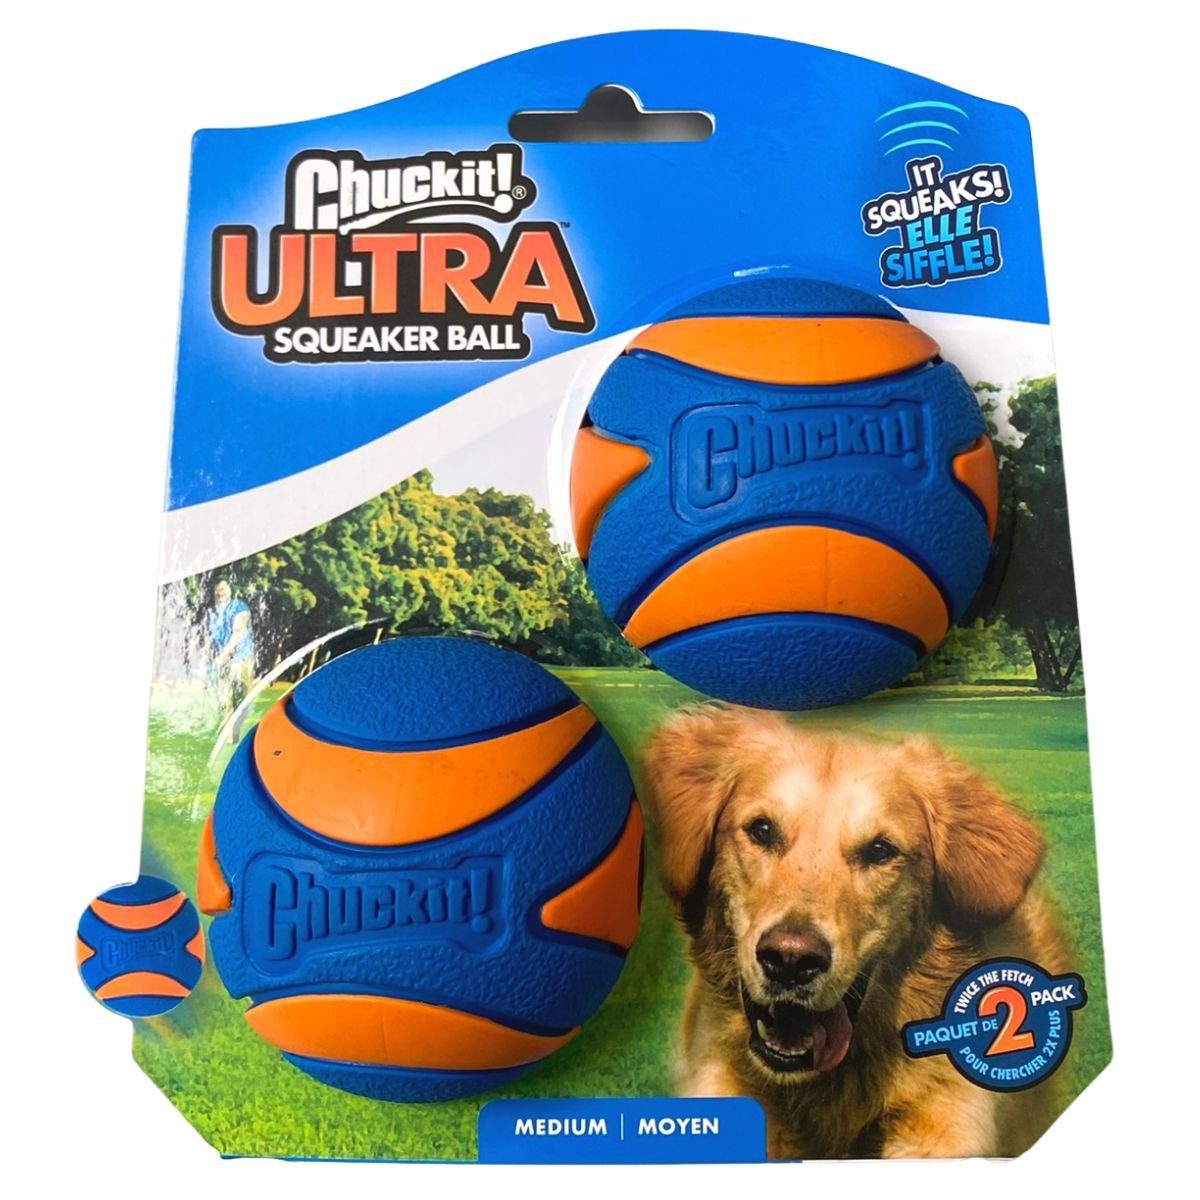 Tierball Squeaker 6 Chuckit cm Ultra 2er-Pack Ball Medium Chuckit